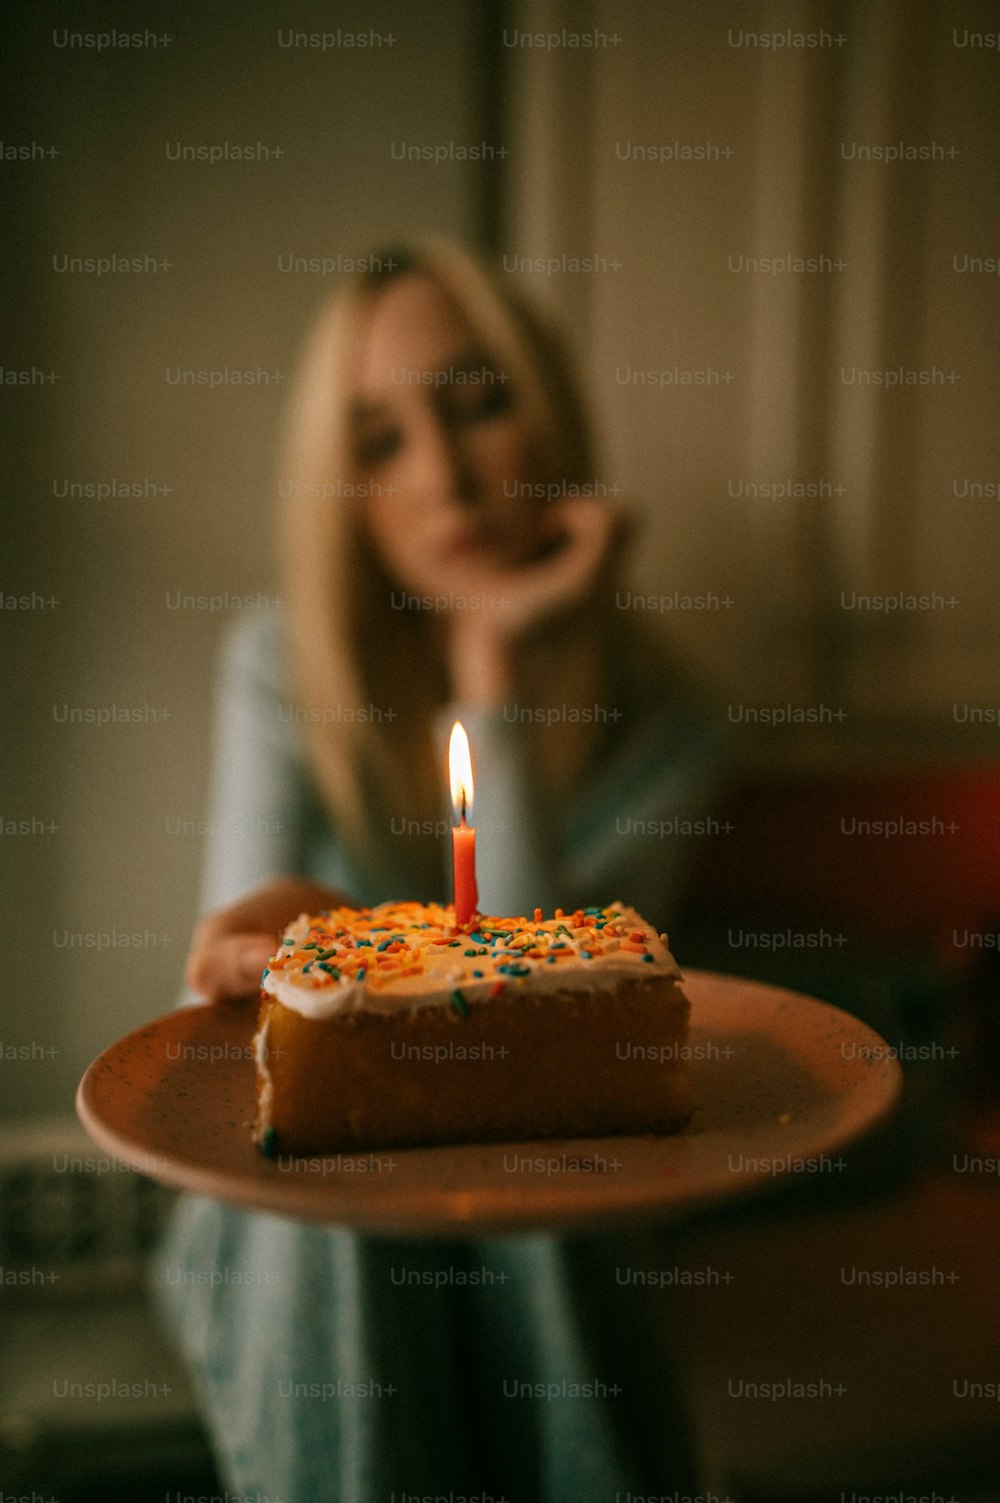 une femme tenant une assiette avec un morceau de gâteau dessus